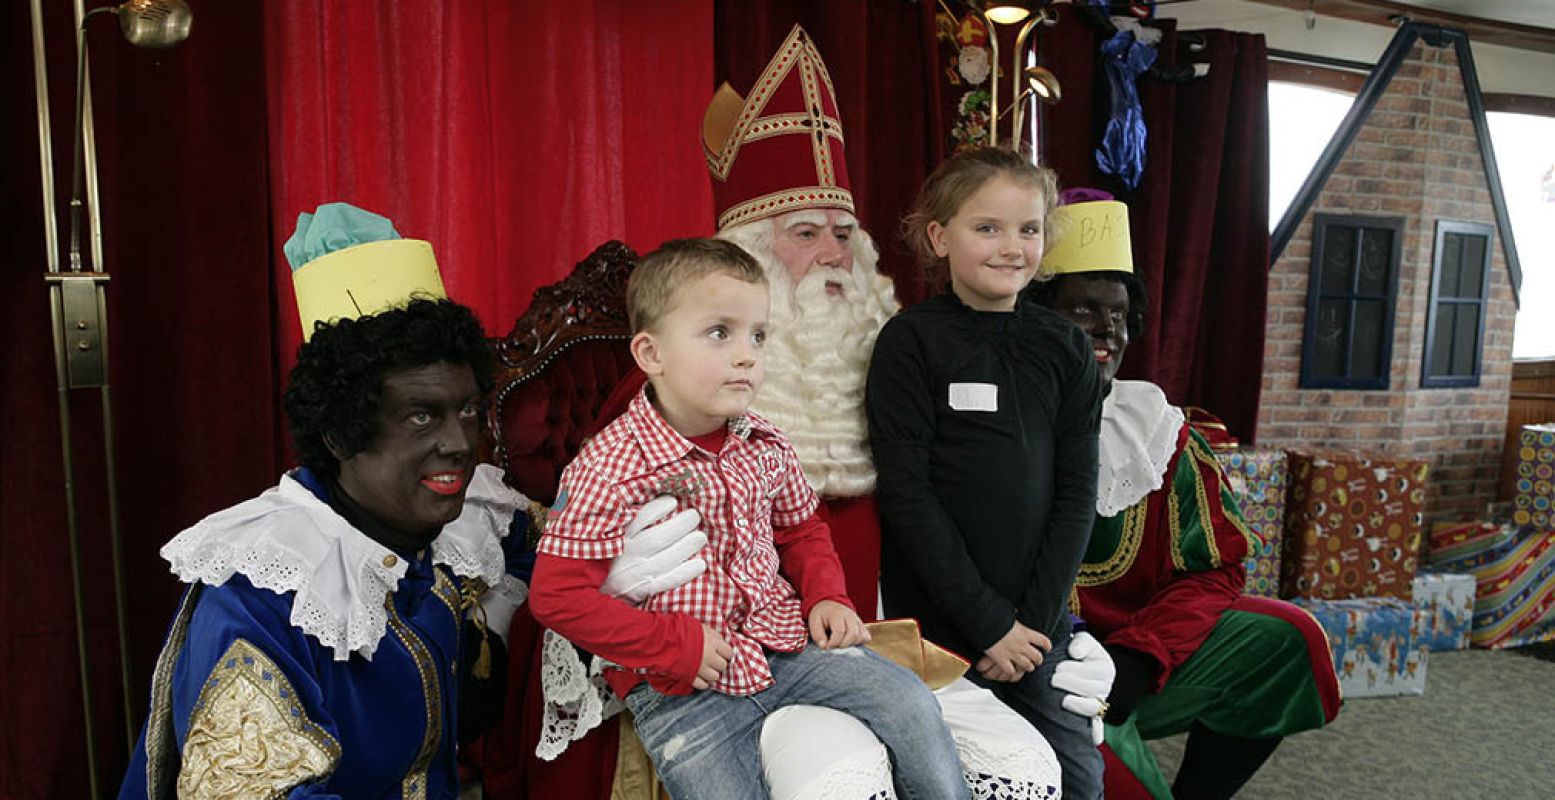 Ontmoet Sinterklaas en reis met hem en zijn pieten mee in de trein. Foto: Museumstoomtram Hoorn-Medemblik © K. Laan.